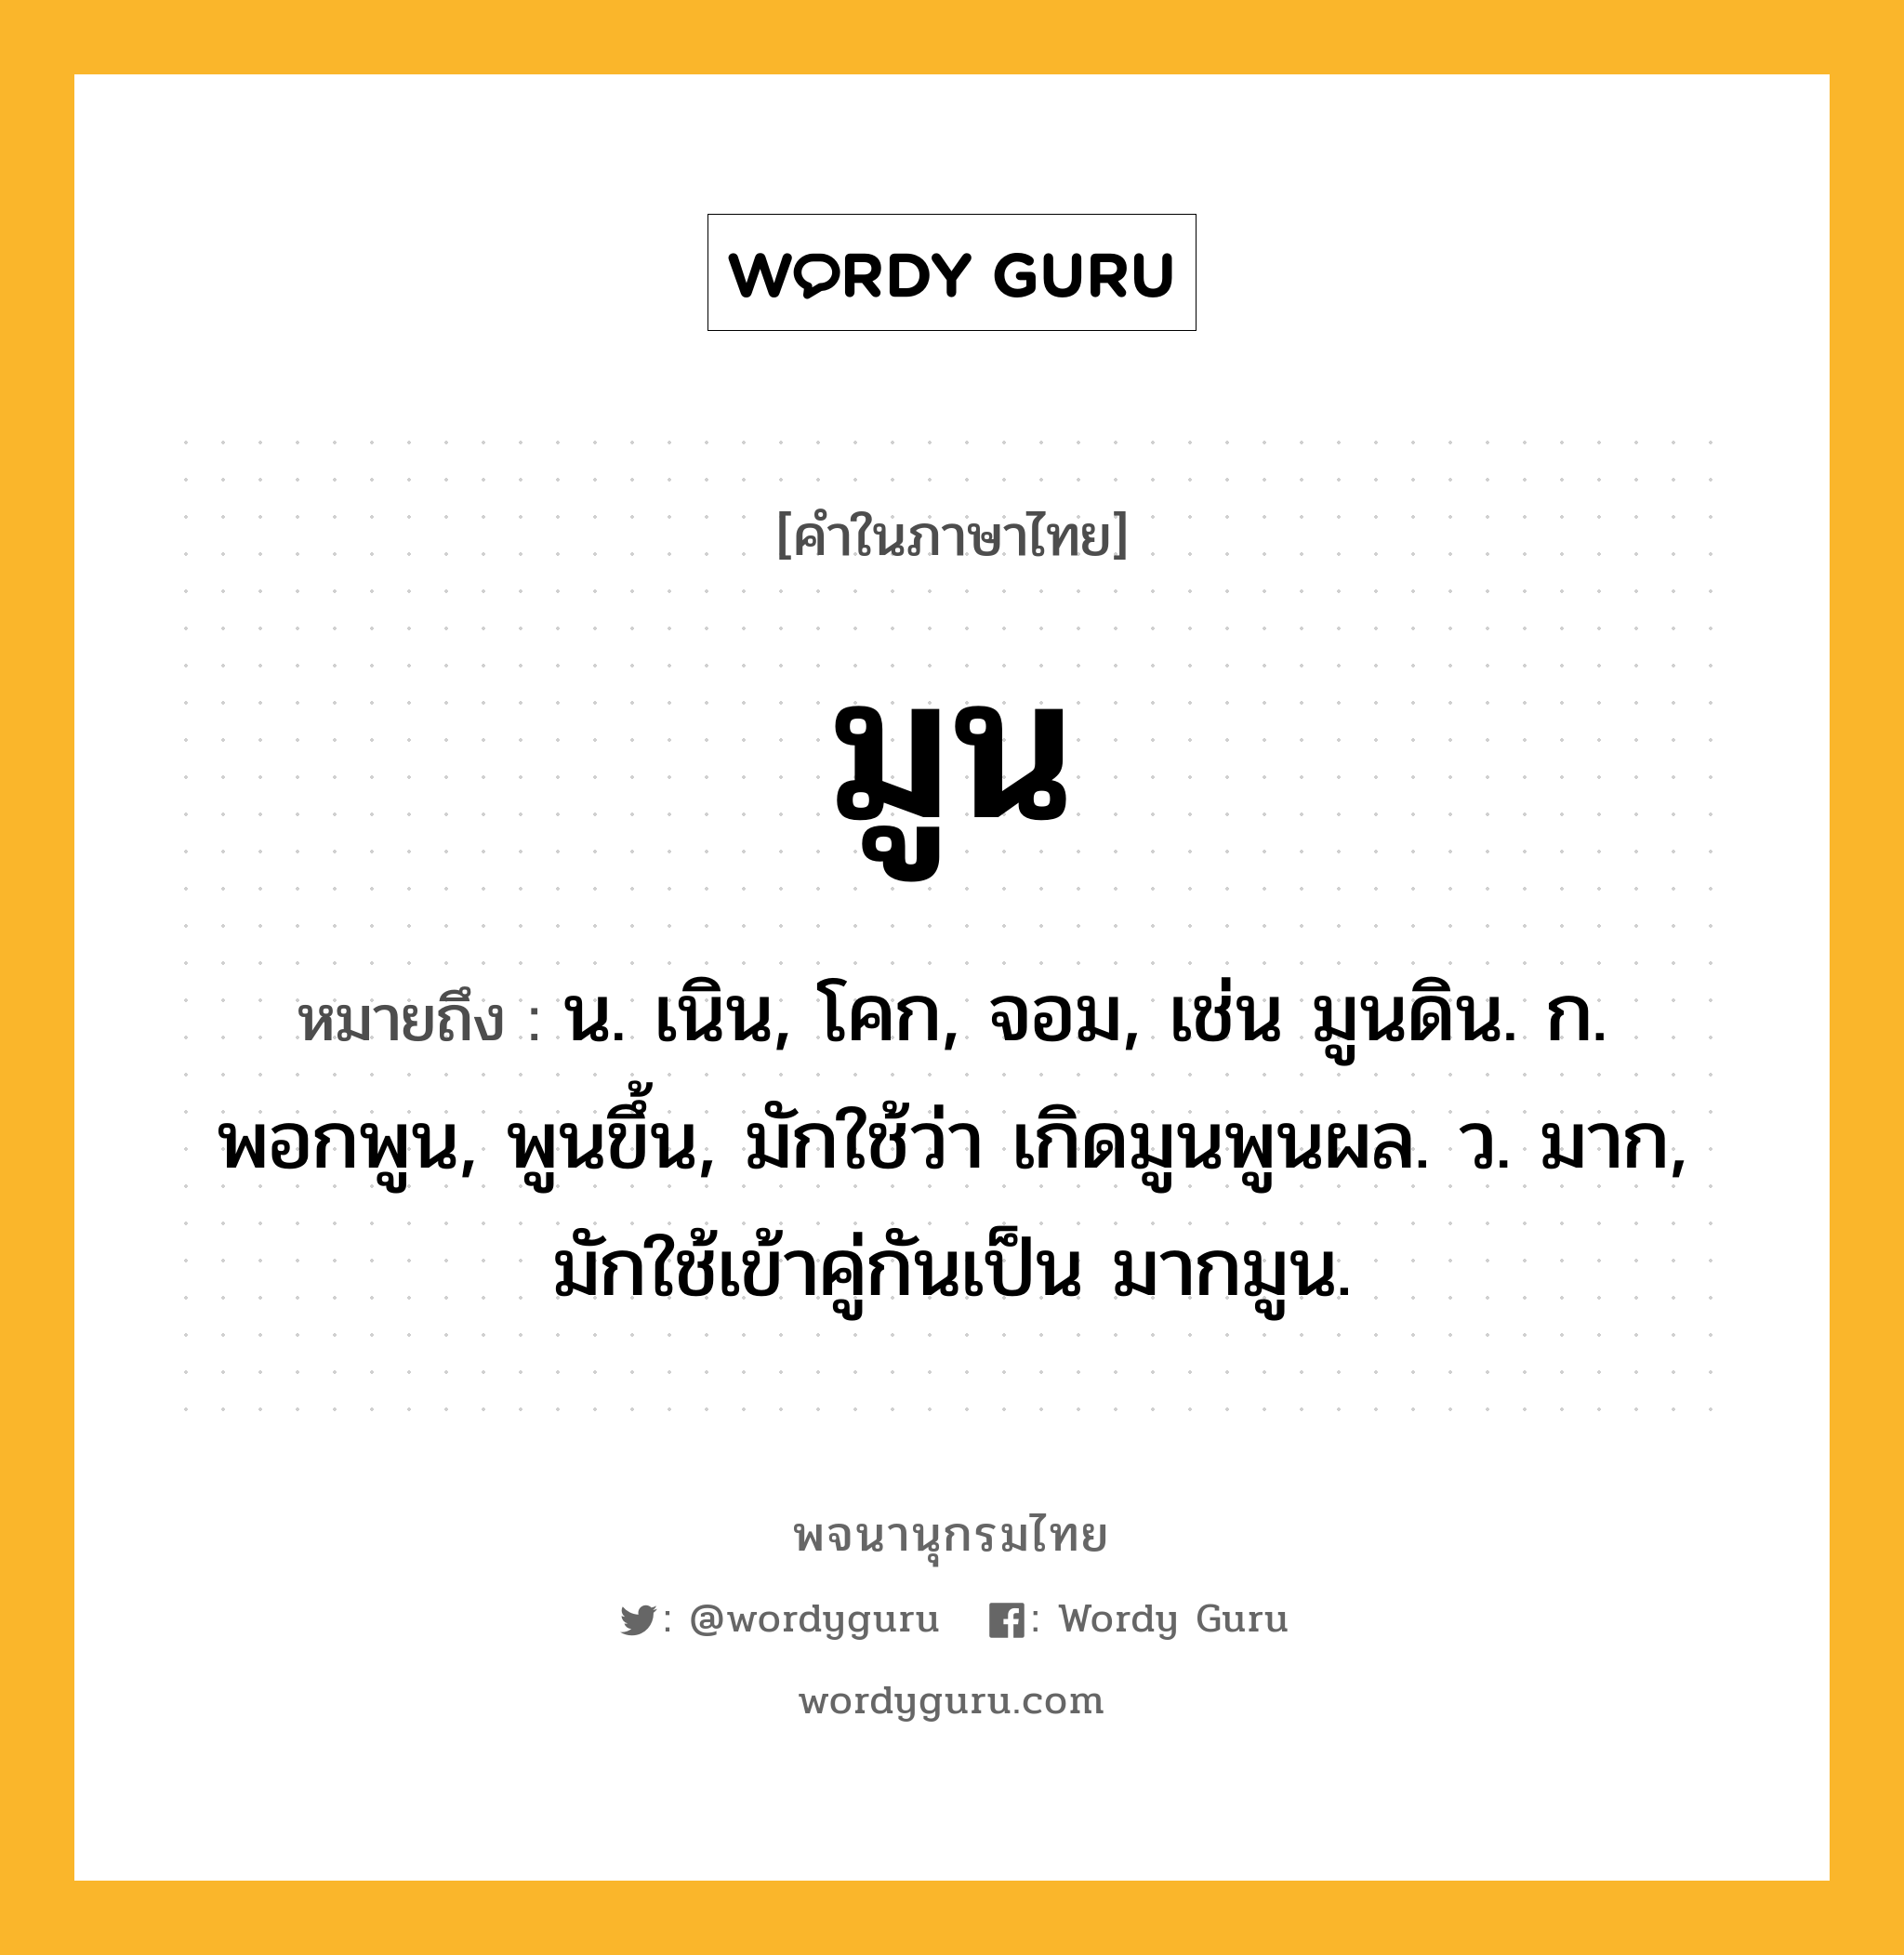 มูน ความหมาย หมายถึงอะไร?, คำในภาษาไทย มูน หมายถึง น. เนิน, โคก, จอม, เช่น มูนดิน. ก. พอกพูน, พูนขึ้น, มักใช้ว่า เกิดมูนพูนผล. ว. มาก, มักใช้เข้าคู่กันเป็น มากมูน.